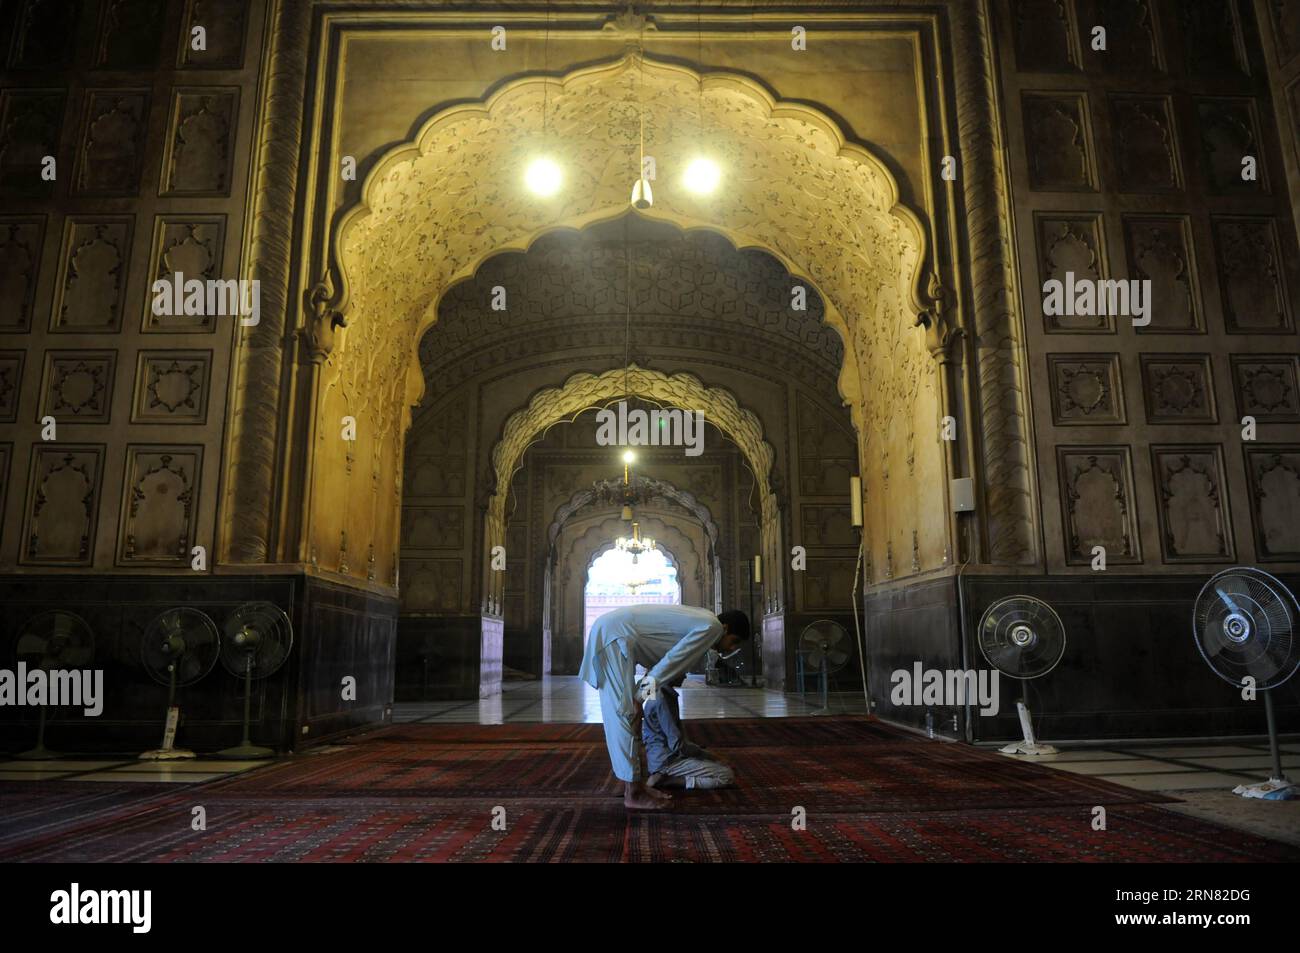 (151001) -- LAHORE, le 1 octobre 2015 -- Un homme offre la prière à la mosquée Badshahi à Lahore, dans l'est du Pakistan, le 1 octobre 2015. La mosquée Badshahi, ou mosquée impériale, commandée par le sixième empereur moghol Aurangzeb en 1671 et achevée en 1673, est la deuxième plus grande mosquée du Pakistan et de l'Asie du Sud et la cinquième plus grande mosquée du monde. Incarnant la beauté, la passion et la grandeur de l'ère moghole, c'est le point de repère le plus célèbre de Lahore et une attraction touristique majeure.) PAKISTAN-LAHORE-BADSHAHI-MOSQUÉE AhmadxKamal PUBLICATIONxNOTxINxCHN Lahore OCT 1 2015 un homme OFFRE de prier Banque D'Images